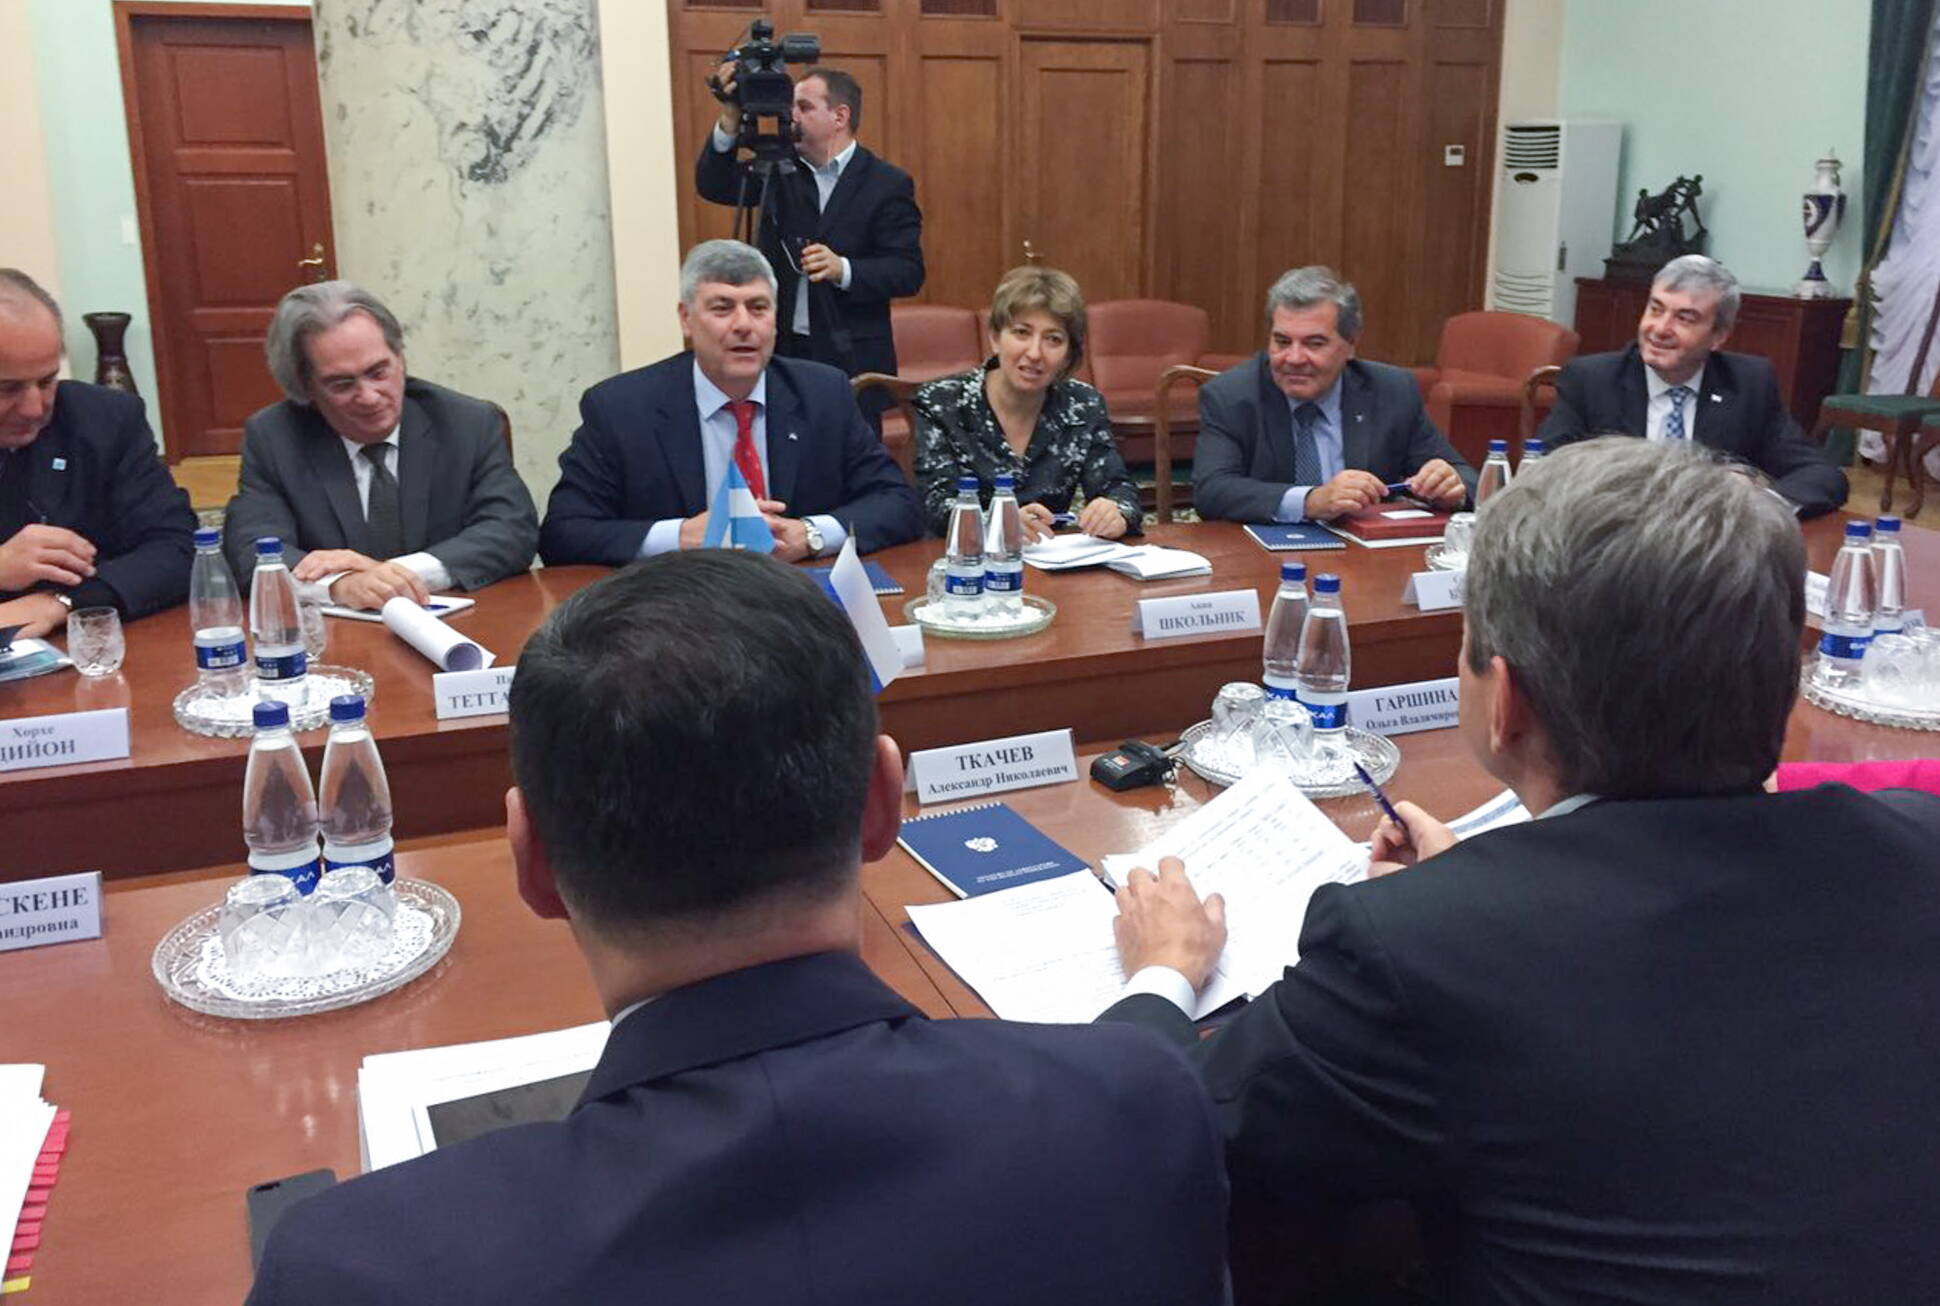 El ministro de Agroindustria expuso en Rusia nuevas medidas para el comercio exterior